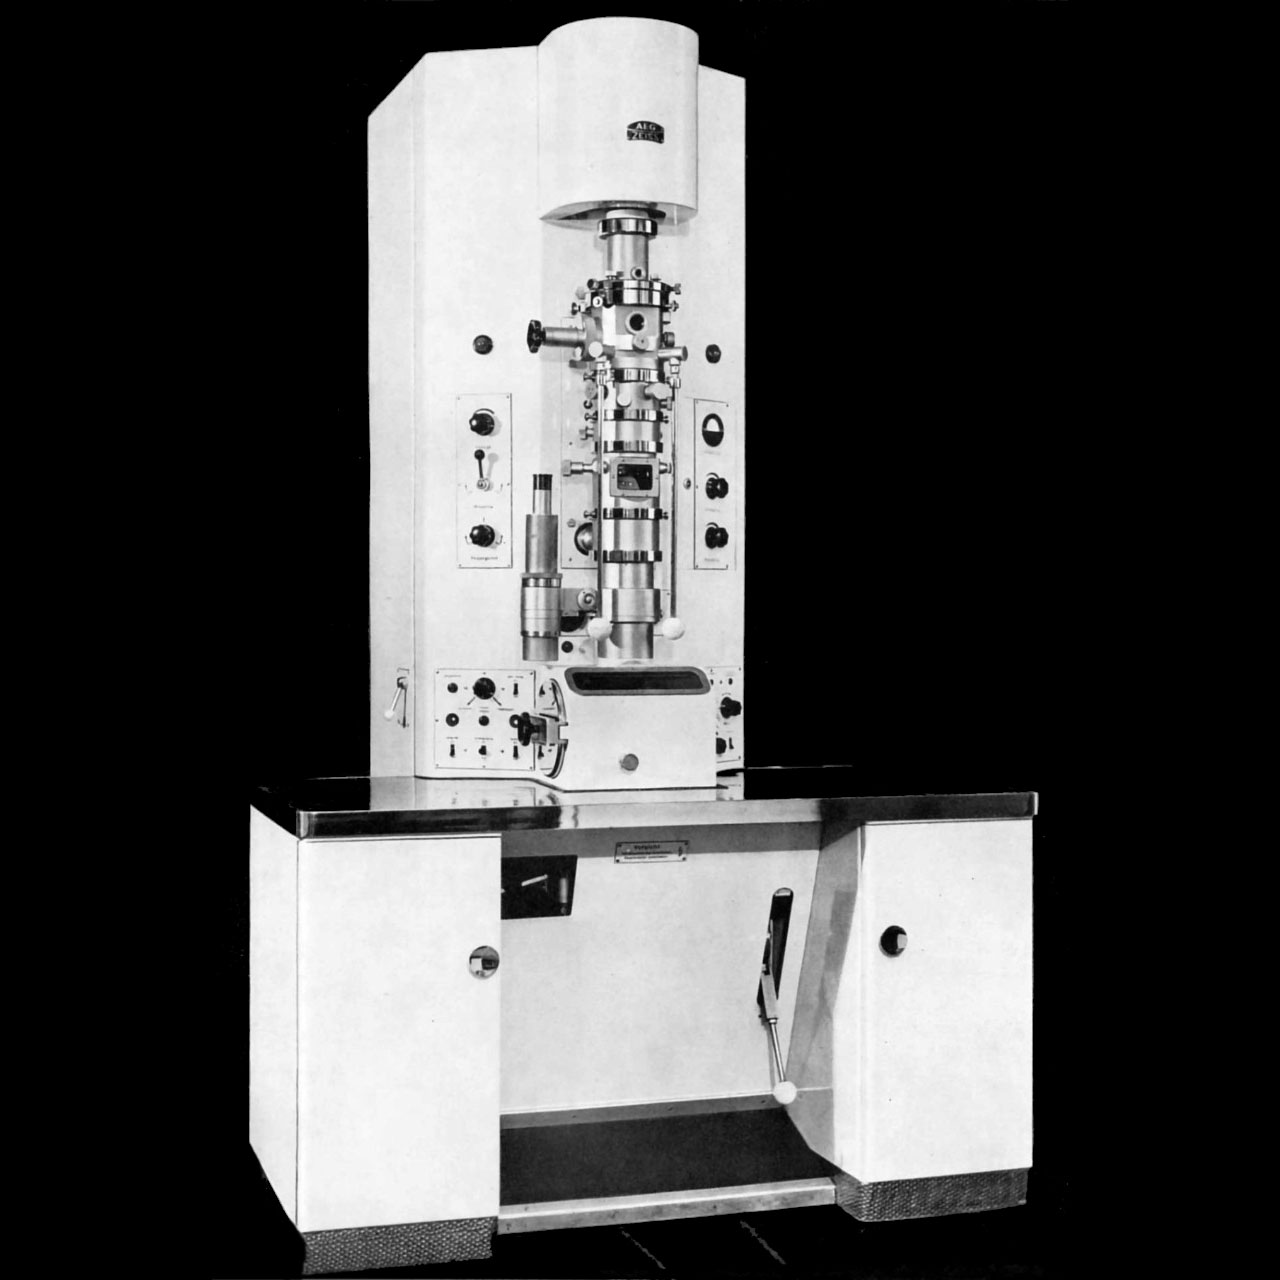 1949年 - AEGとZEISSが静電透過型電子顕微鏡EM 8を開発しました。